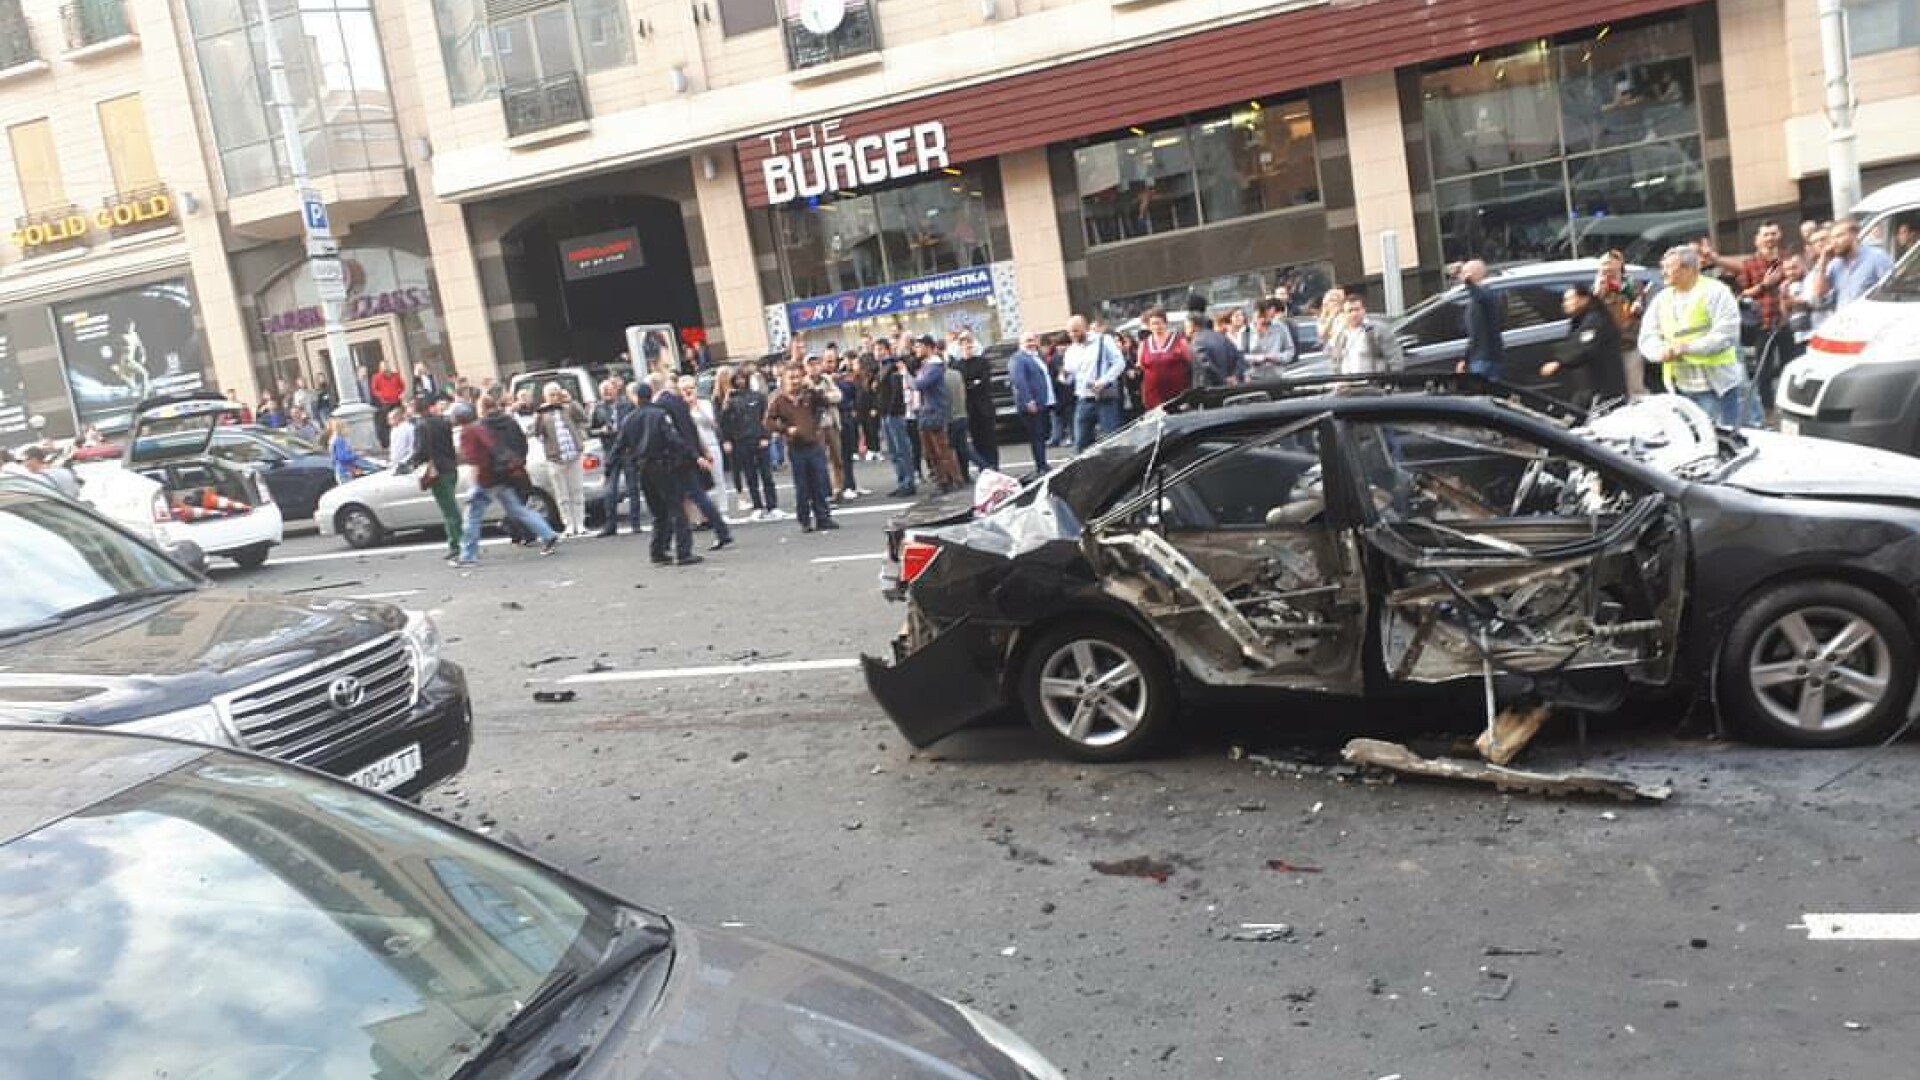 atentat cu bomba in Kiev